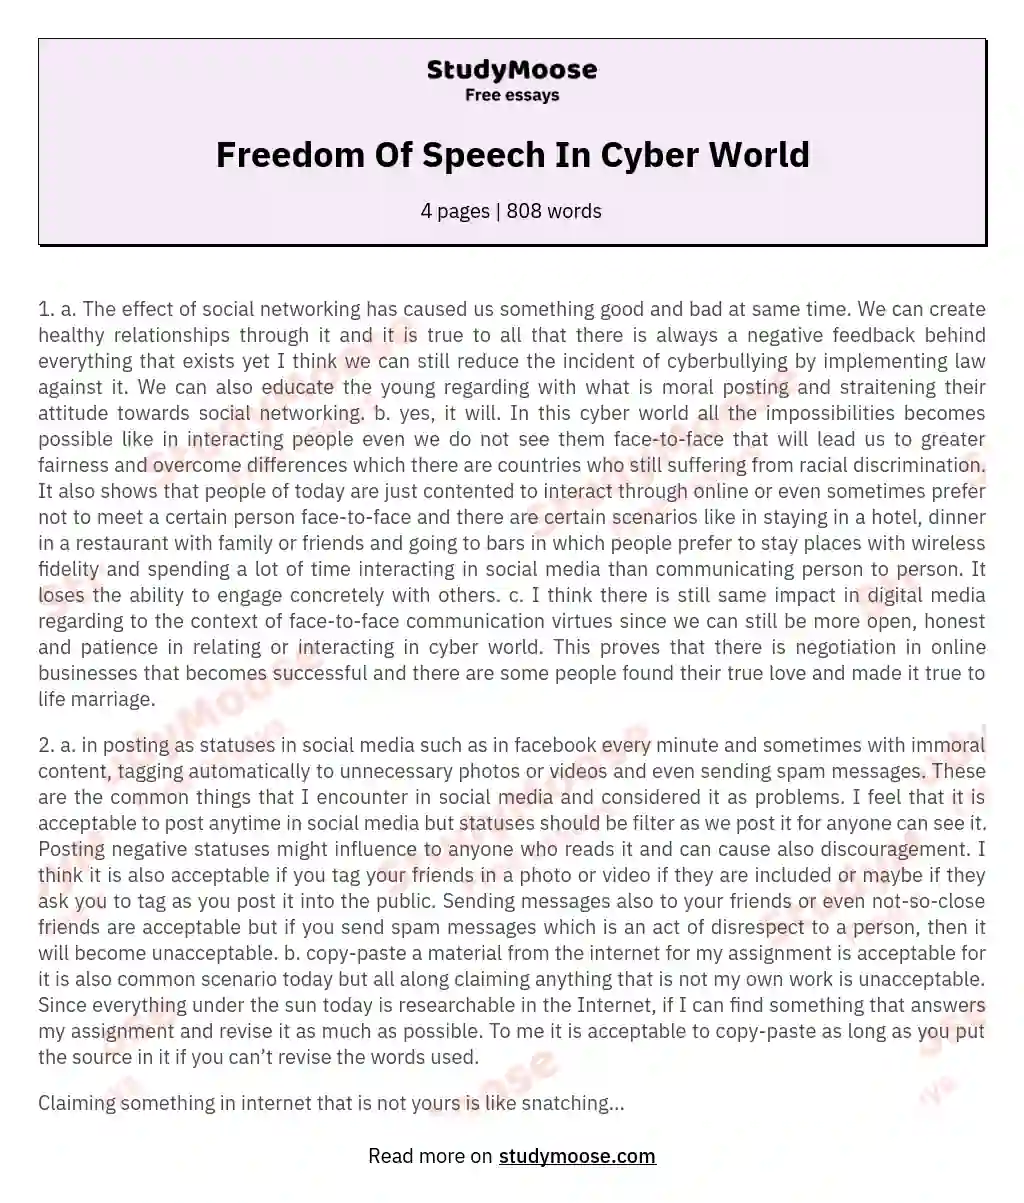 Freedom Of Speech In Cyber World essay